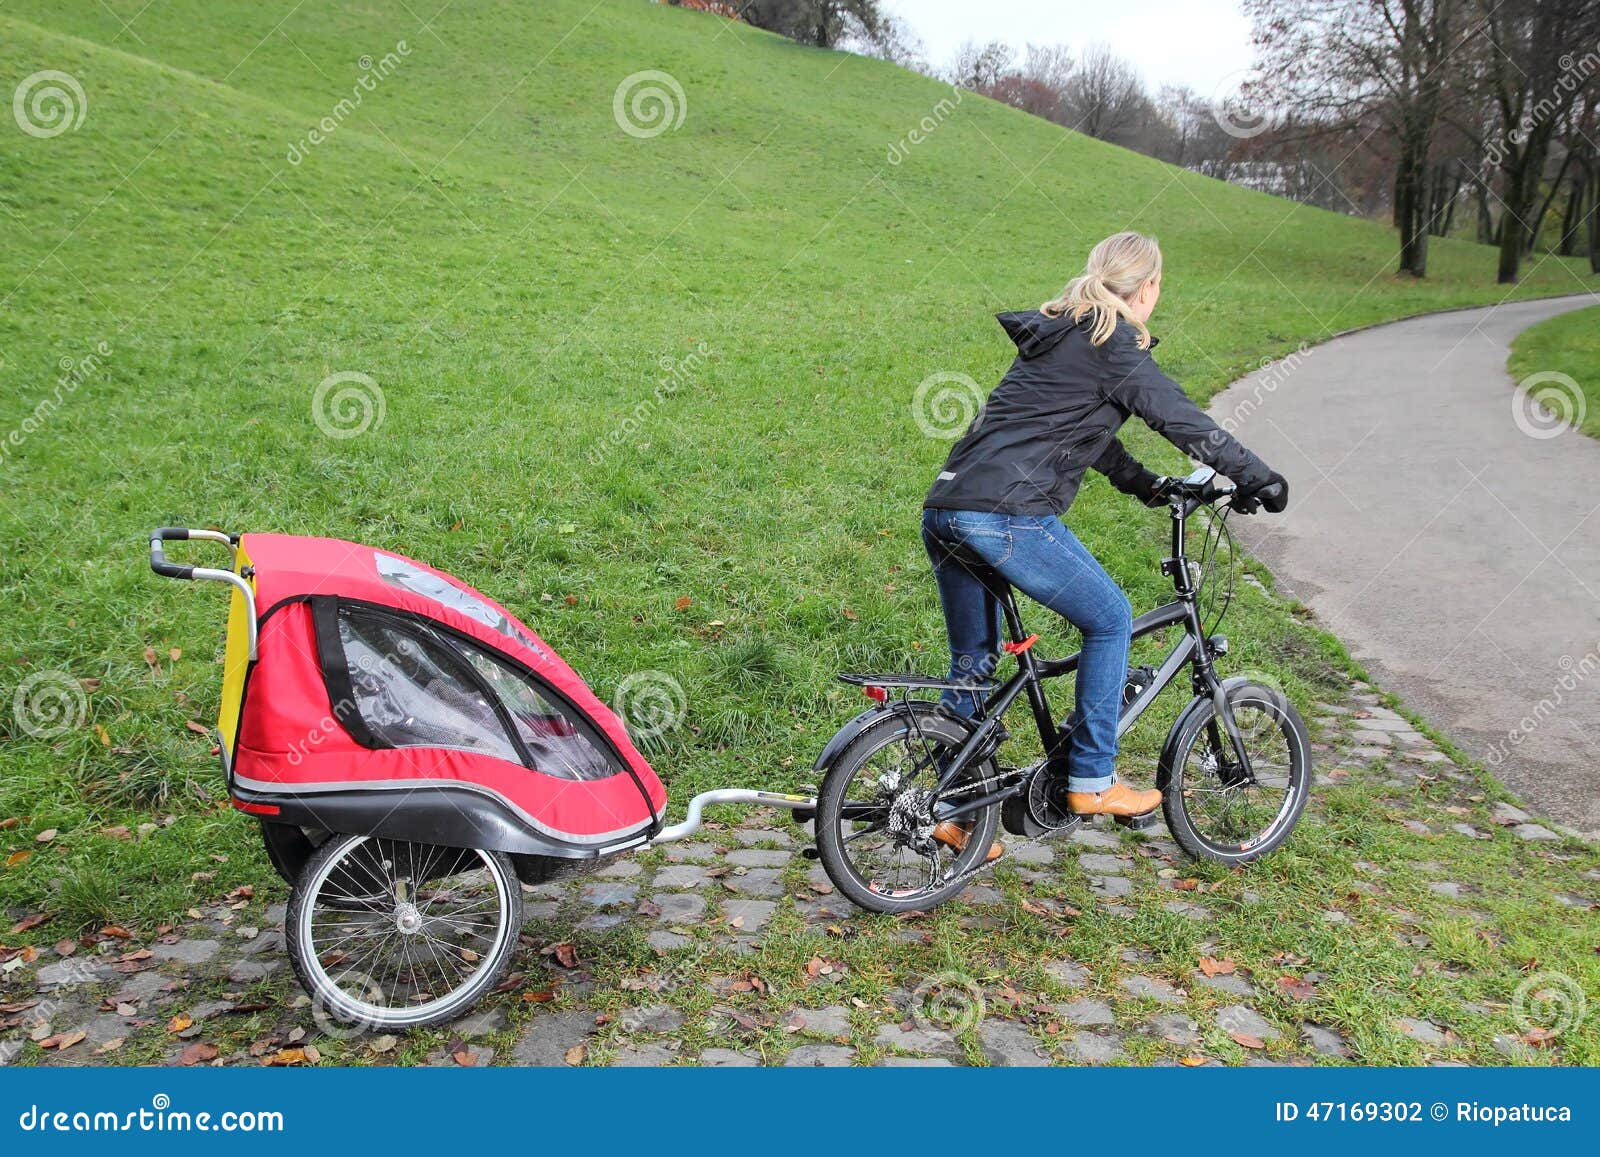 trailer for bike child